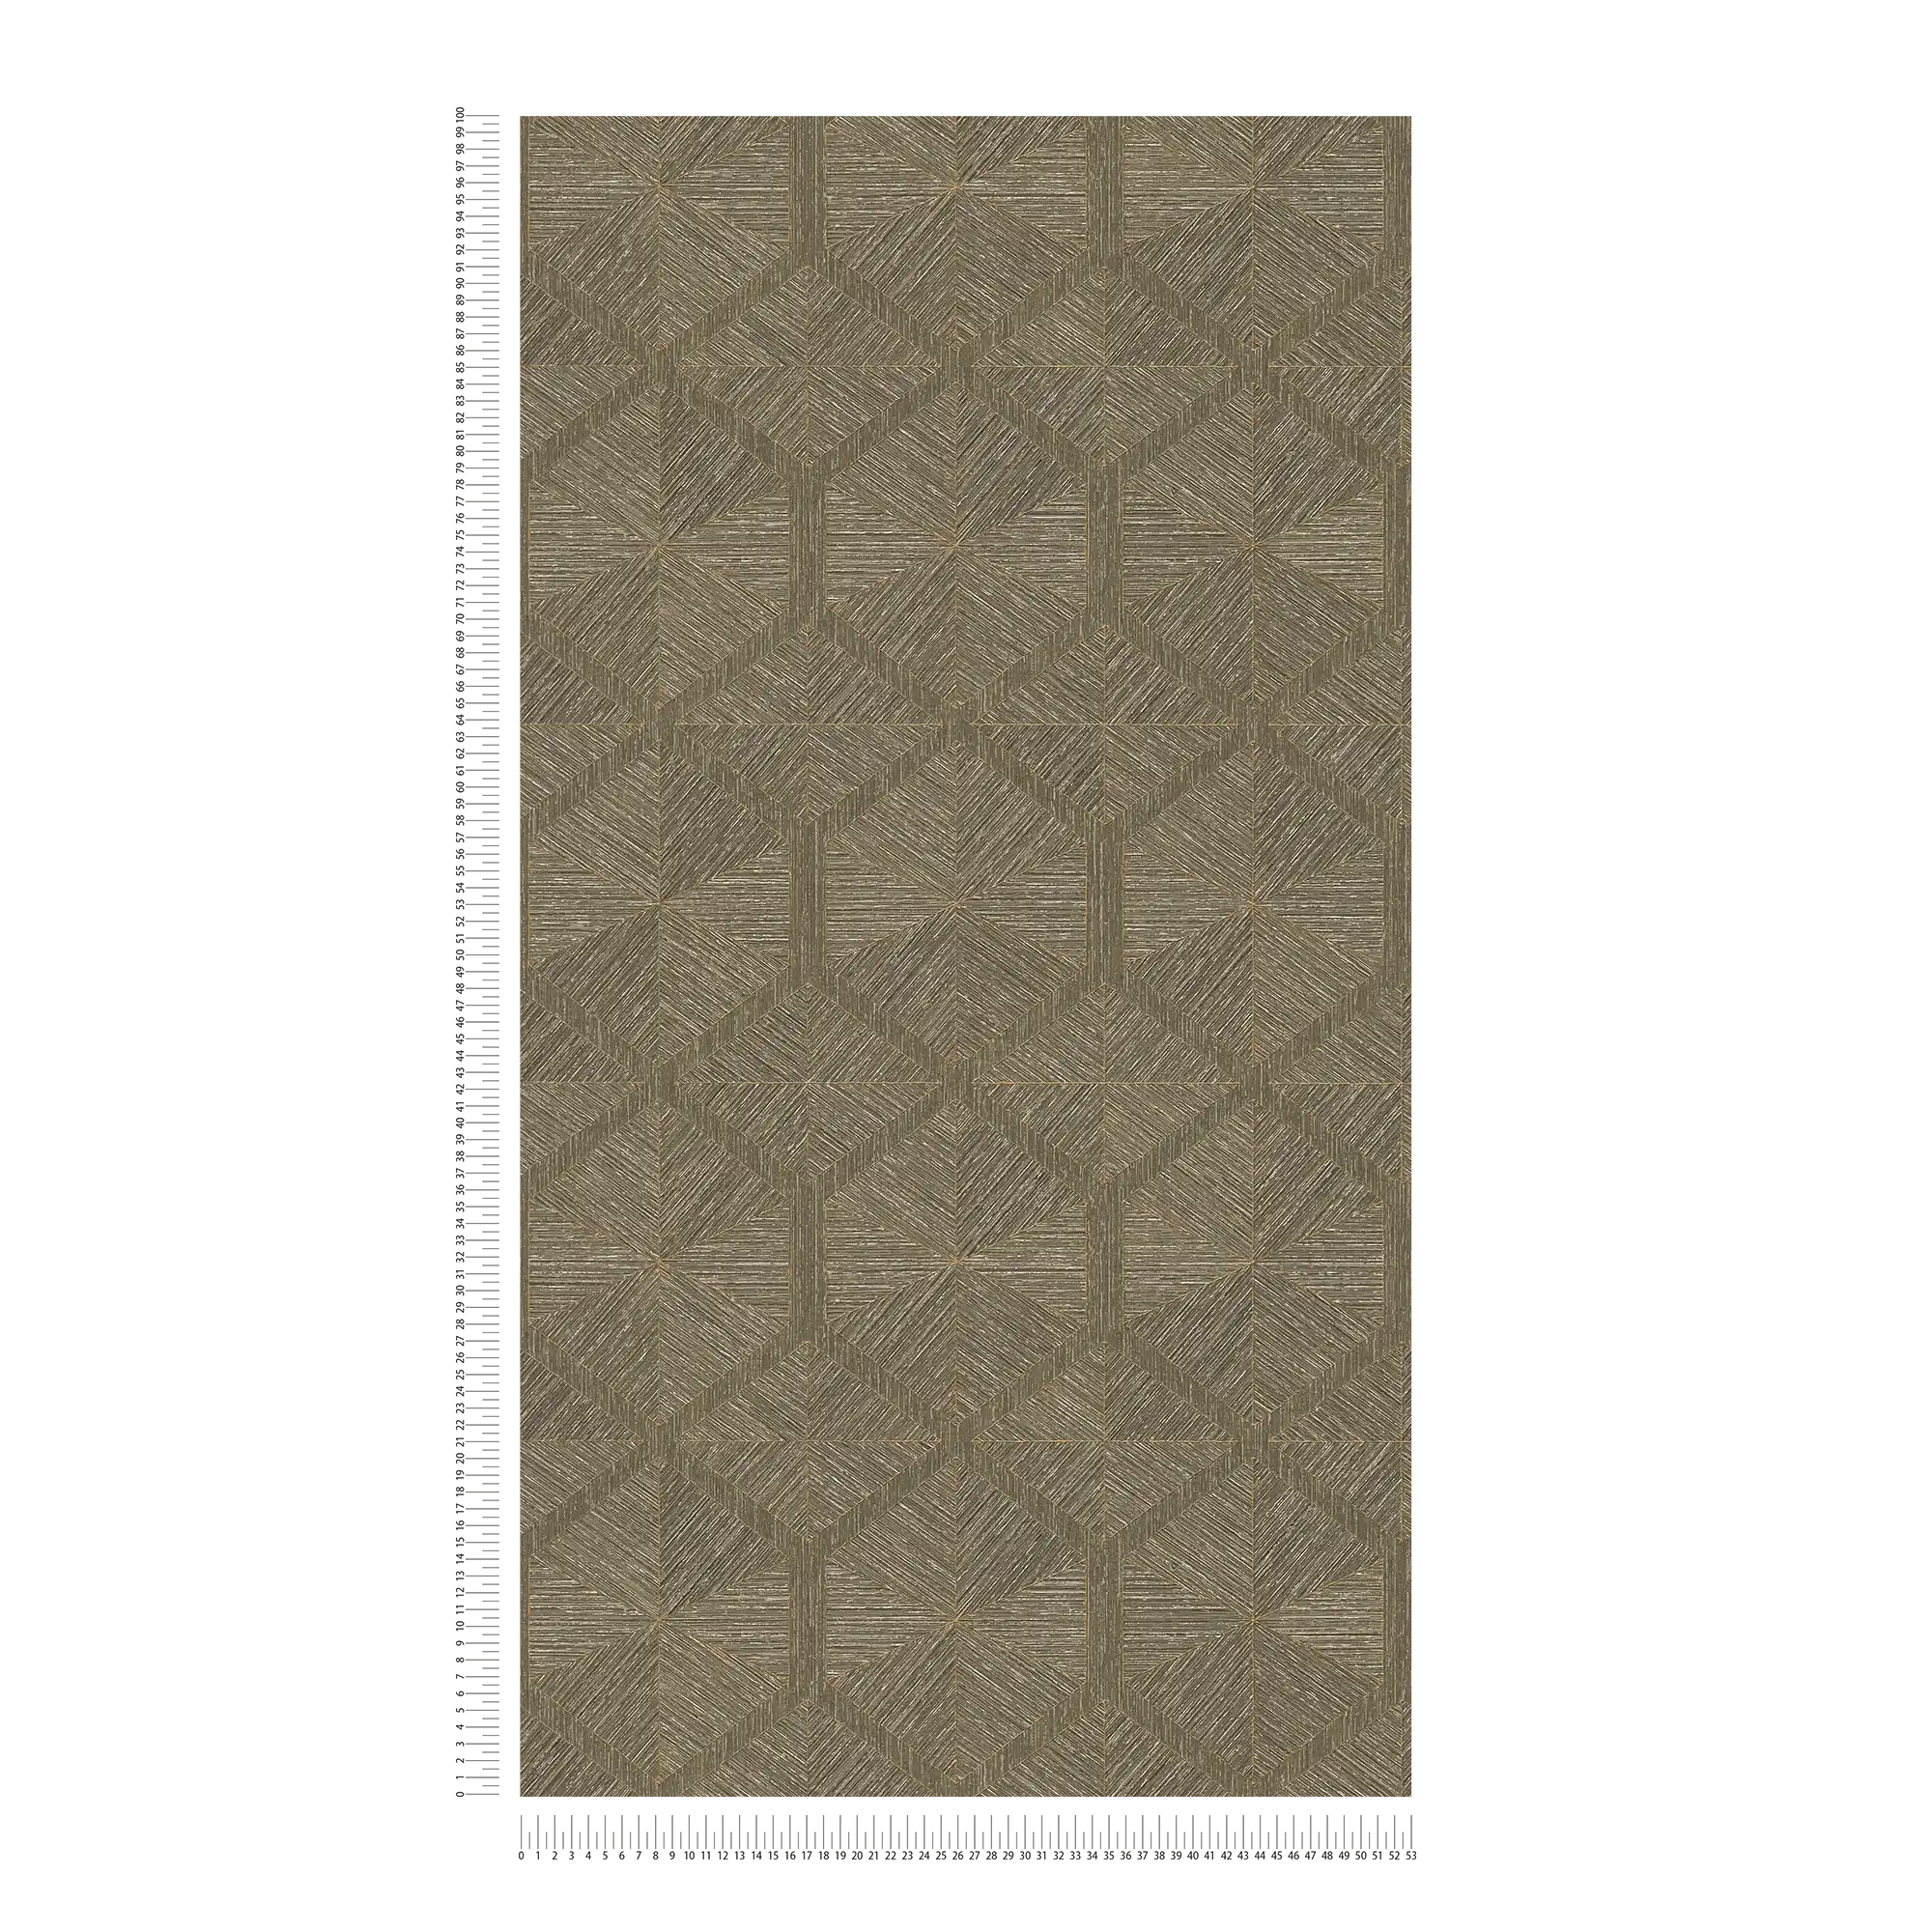             Carta da parati grafica con design a sfaccettature ed effetto metallico - marrone, metallizzato
        